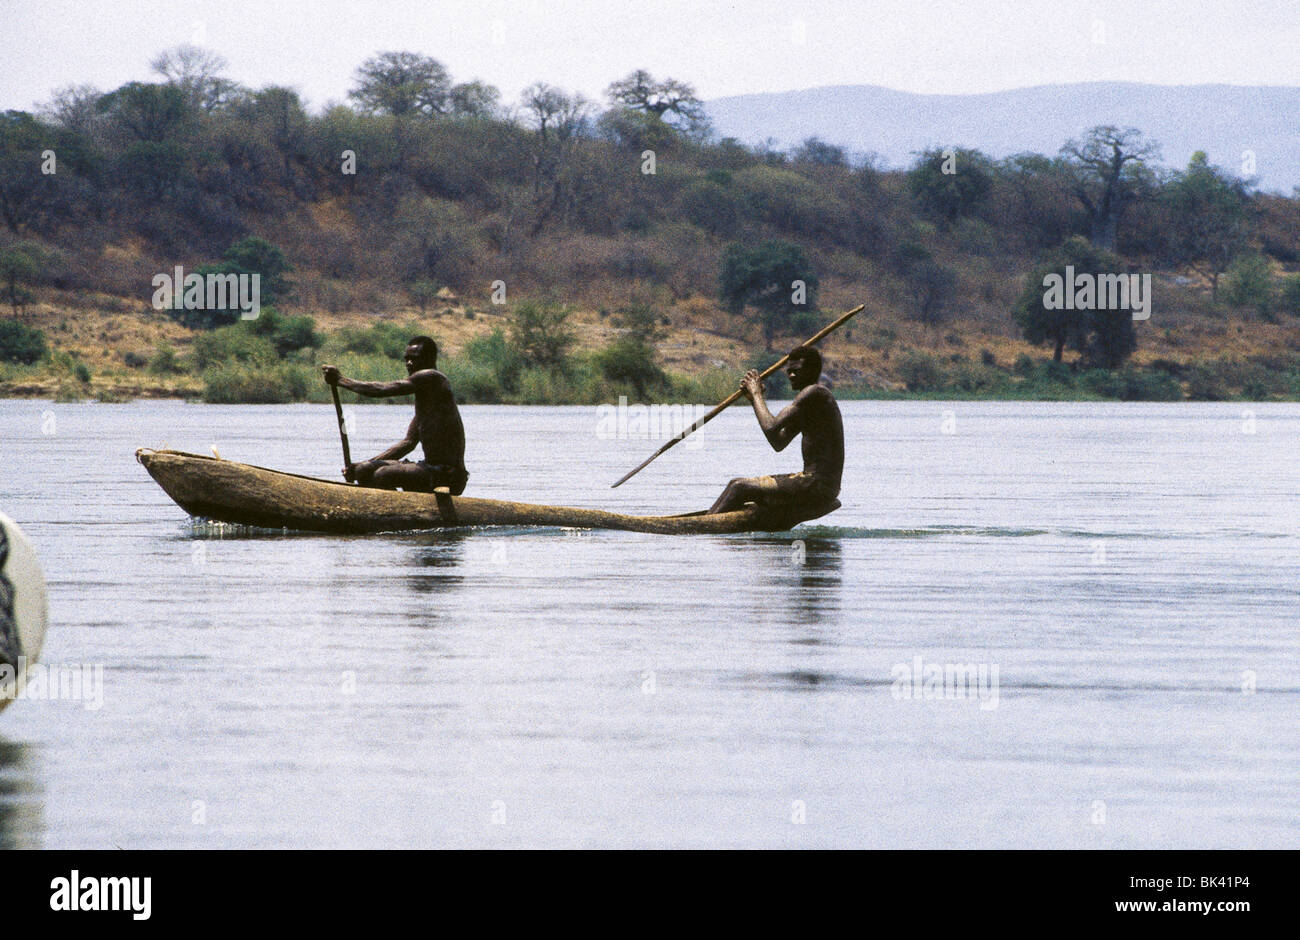 two people paddling a dugout canoe on the zambezi river